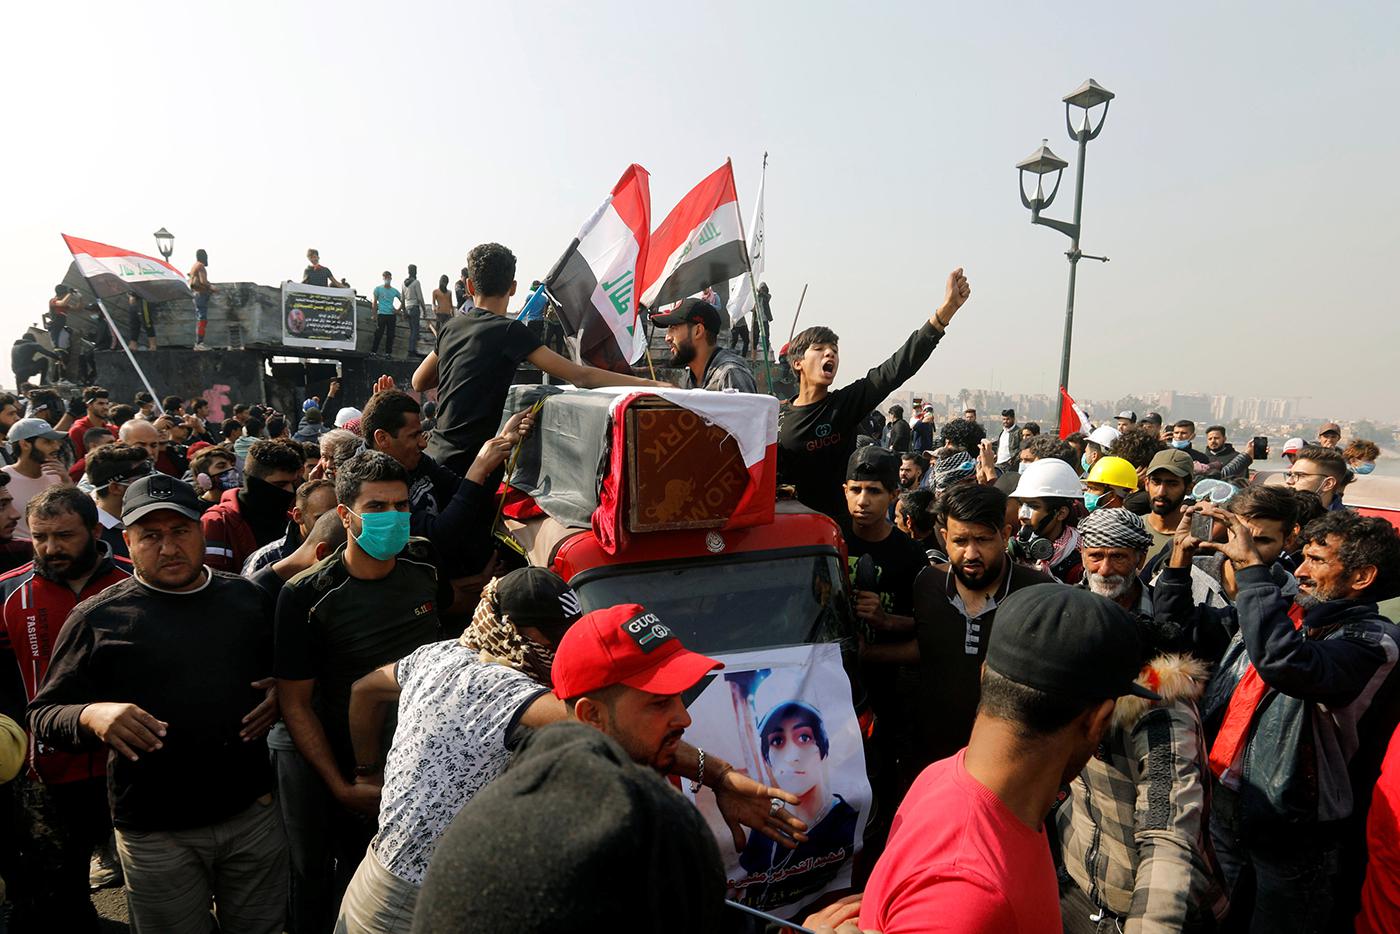 أشخاص في موكب تشييع يحملون نعش أحد المحتجين الذين قتلوا أثناء مظاهرة في بغداد، 24 نوفمبر/تشرين الثاني 2019.  © 2019 رويترز/خالد الموصلي